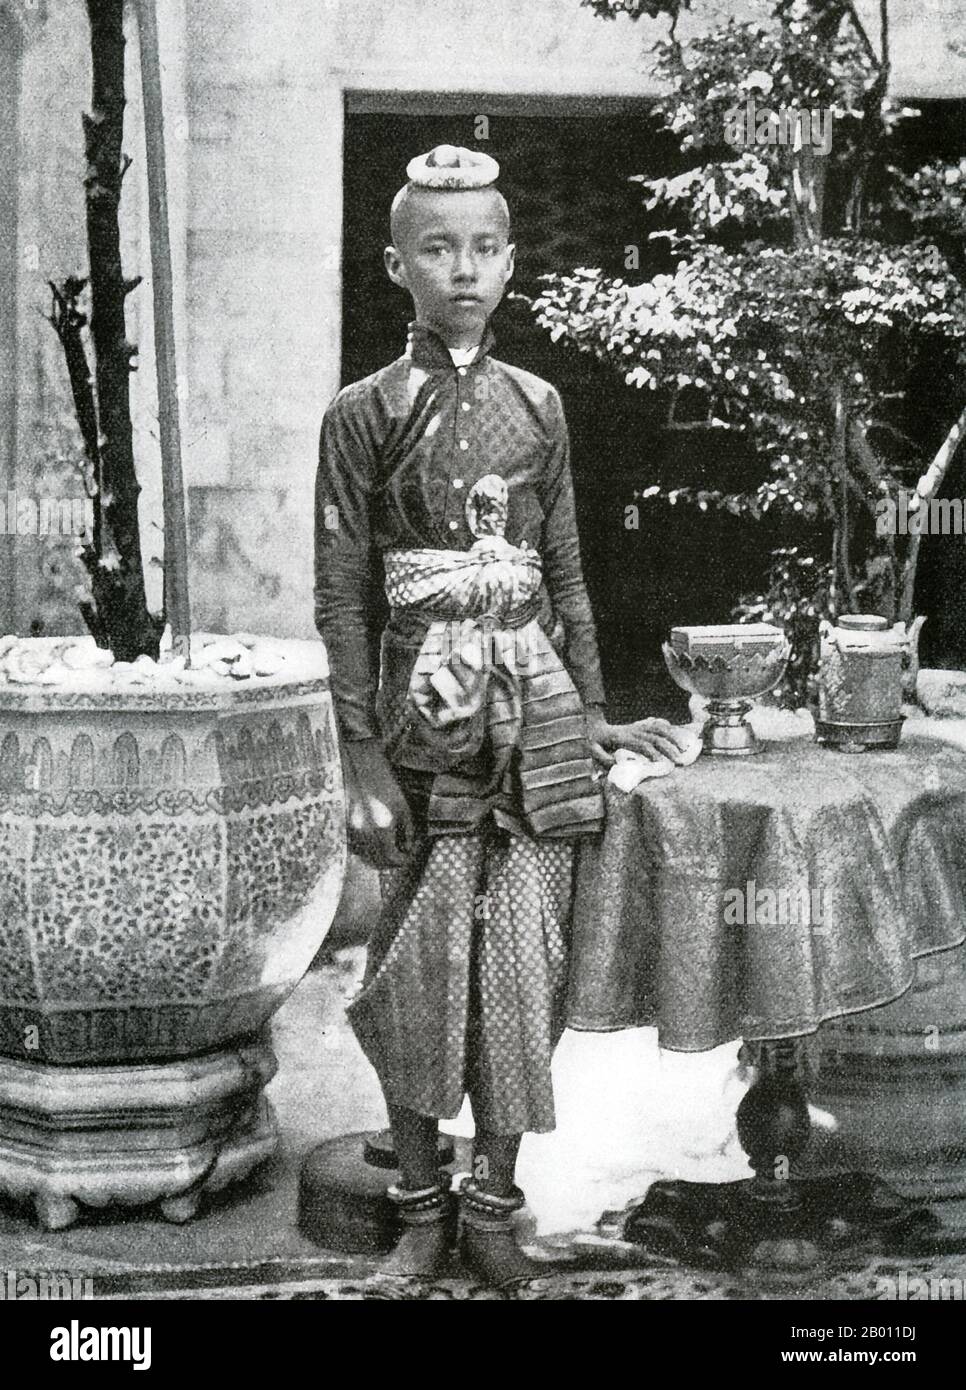 Thailand: König Chulalongkorn als junger Prinz, Siam. Foto von John Thomson (1837-1921), c. 1865. König Chulalongkorn, Rama V (1853–1910) war der fünfte Monarch von Siam unter dem Haus Chakri. Nach dem Tod seines Vaters, König Mongkut, Rama IV., trat er im Alter von 15 Jahren auf den Thron König Chulalongkorn gilt als einer der größten Könige von Siam. Seine Regierungszeit war geprägt von der Modernisierung des Landes, einschließlich großer Regierungs- und Sozialreformen. Ihm wird auch die Rettung Siams vor der Kolonisierung zugeschrieben. Stockfoto